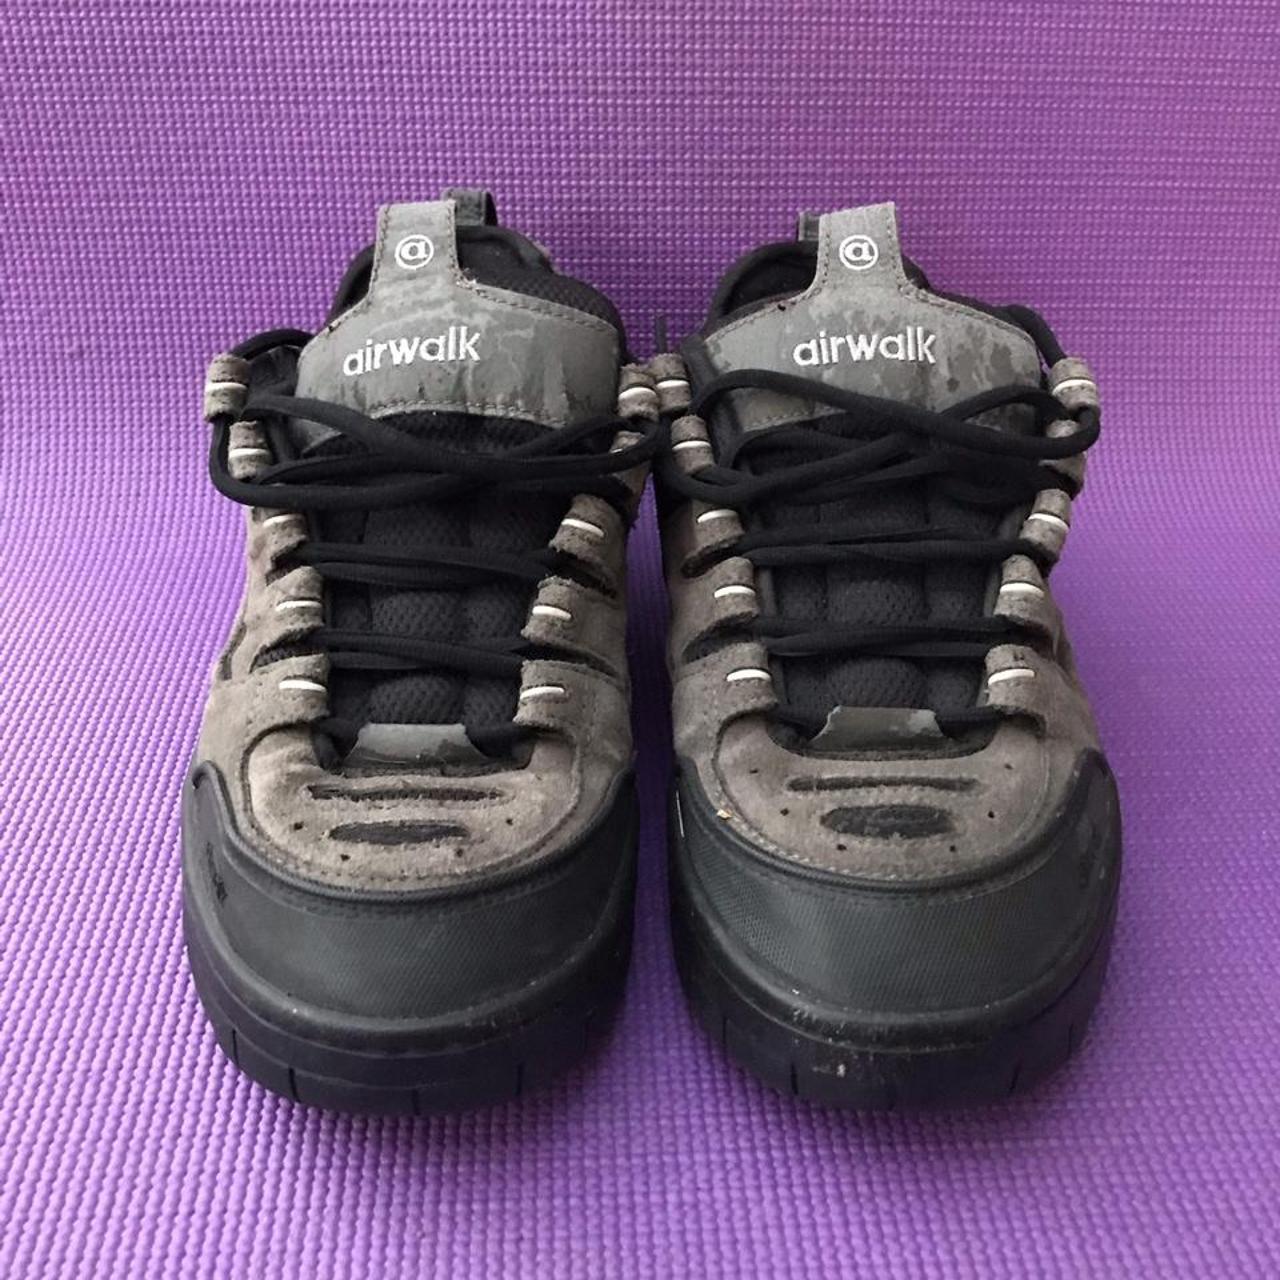 Vintage 90s Airwalk skate shoes puffy sneakers grey - Depop